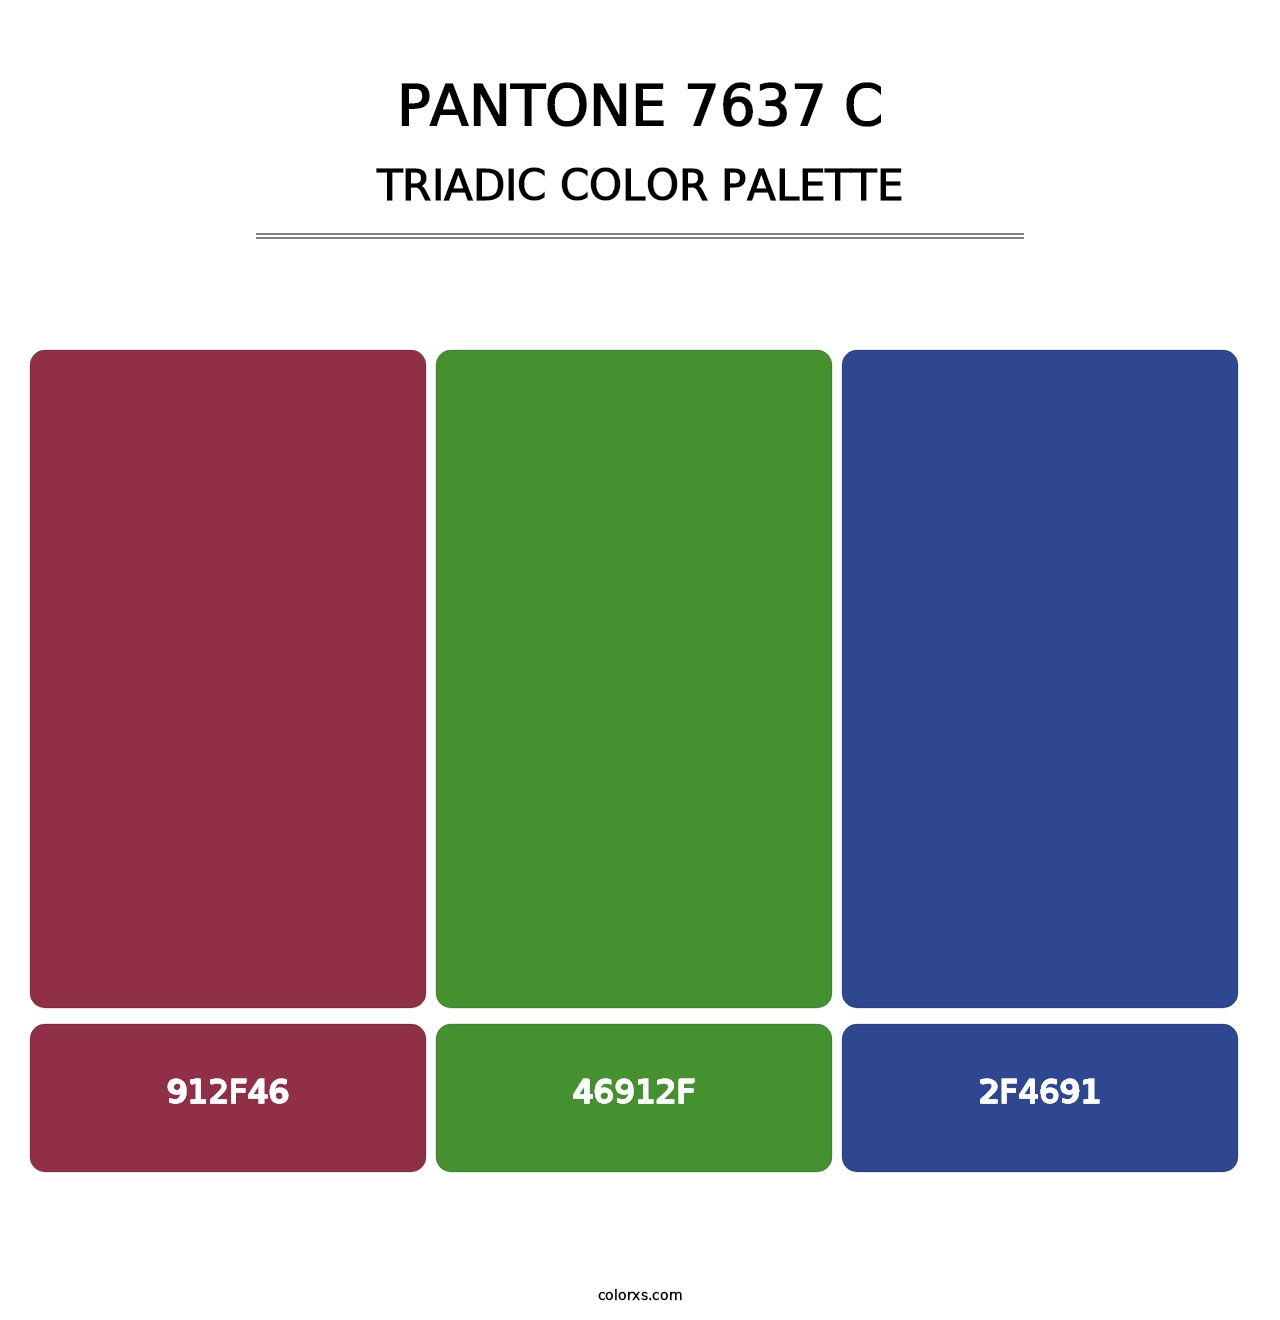 PANTONE 7637 C - Triadic Color Palette